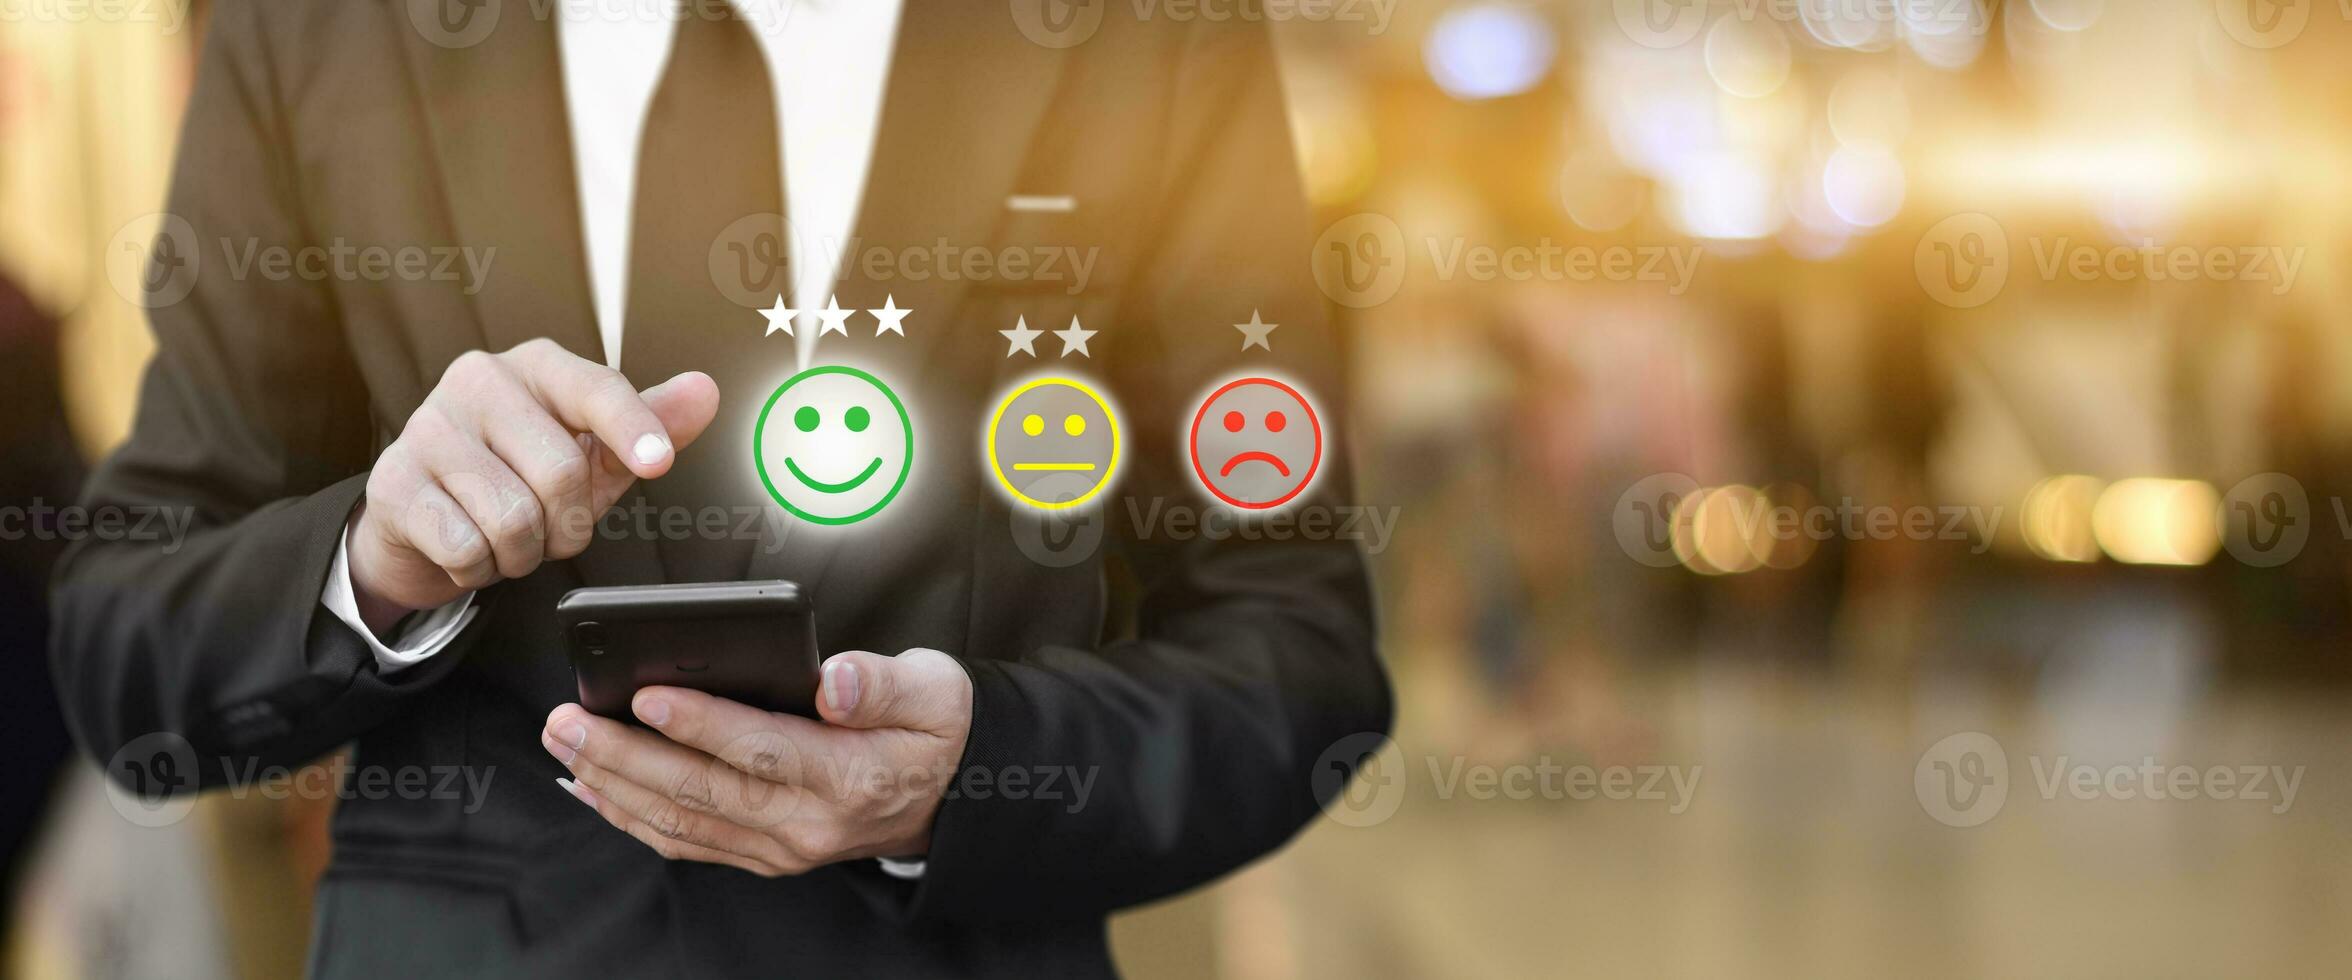 affärsman trycker ansikte uttryckssymbol i smartphone vid visning på virtuell skärm. begreppet kundservice tillfredsställelse utvärdering och feedback. foto